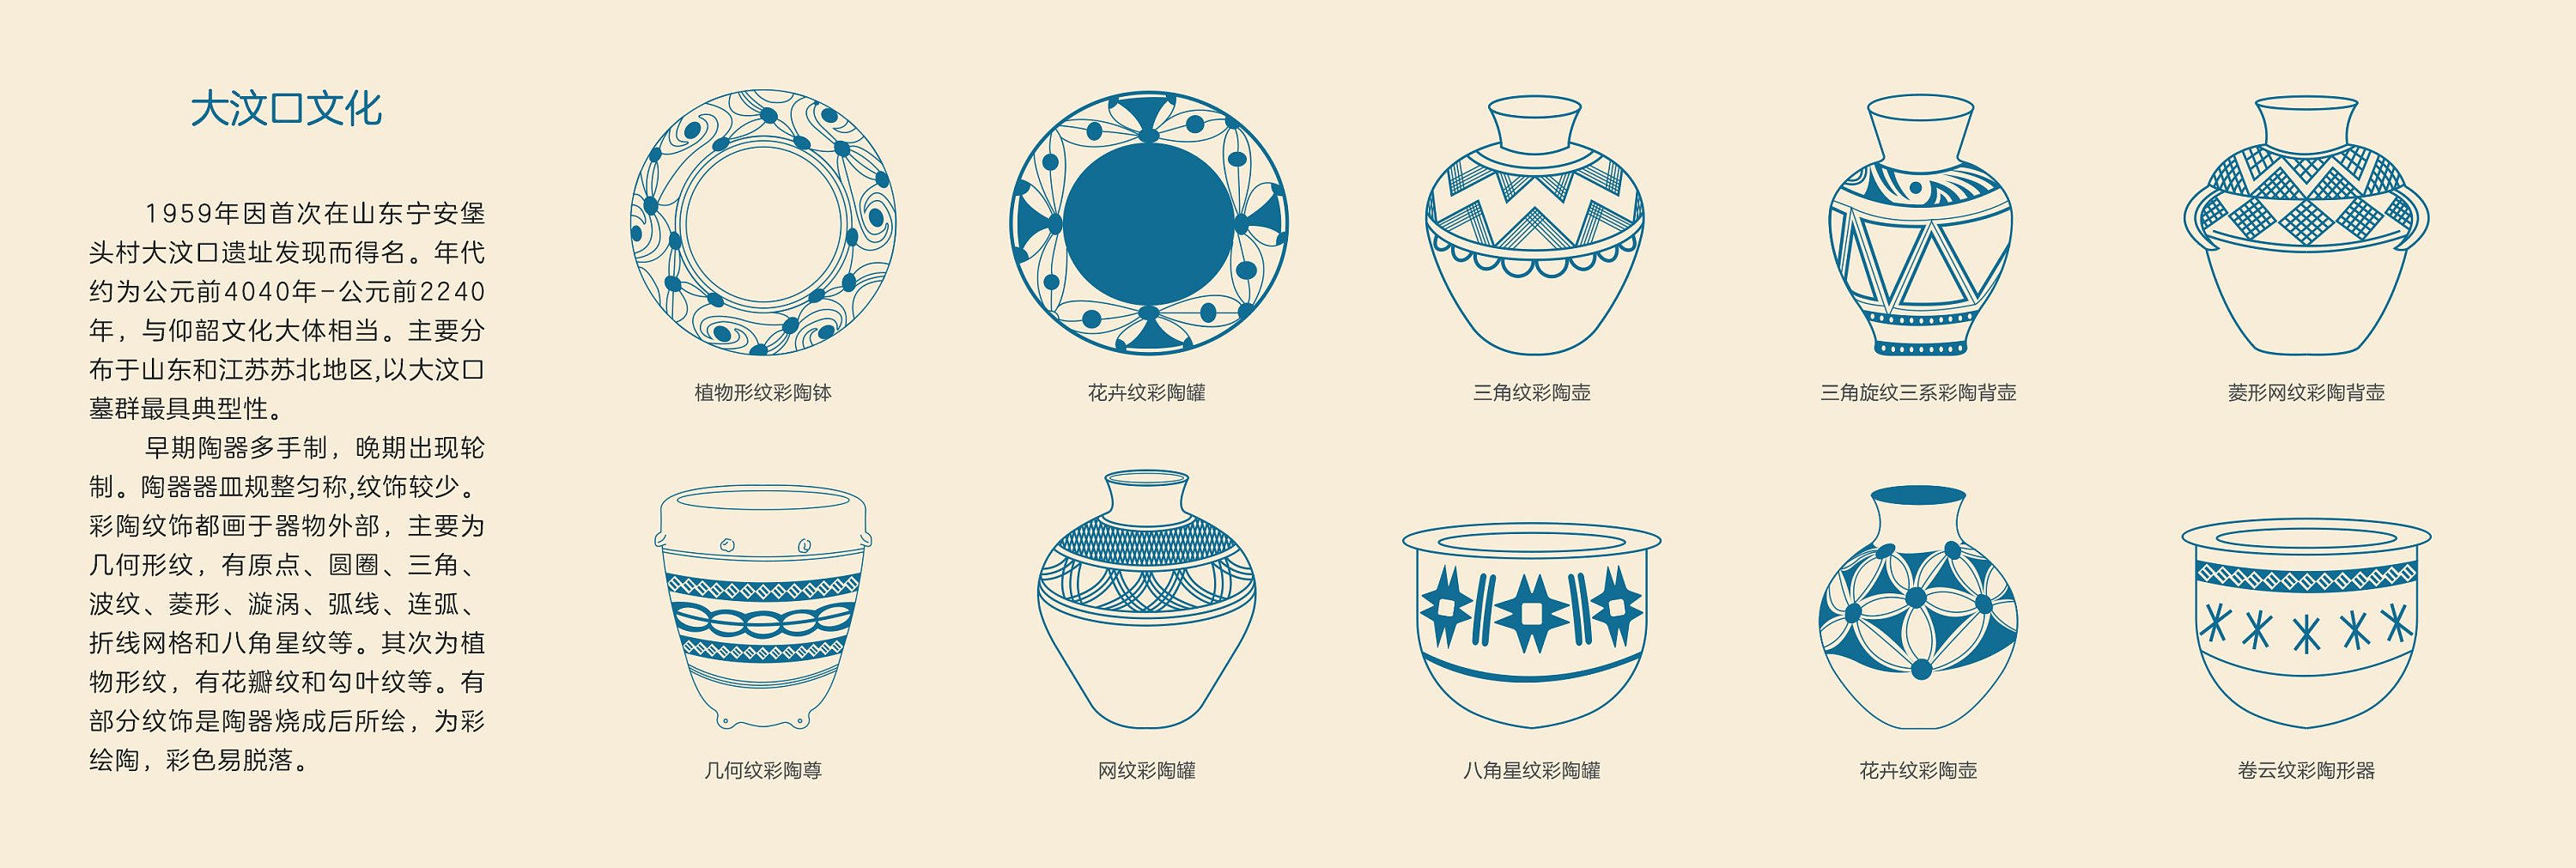 陶器图案简单图片